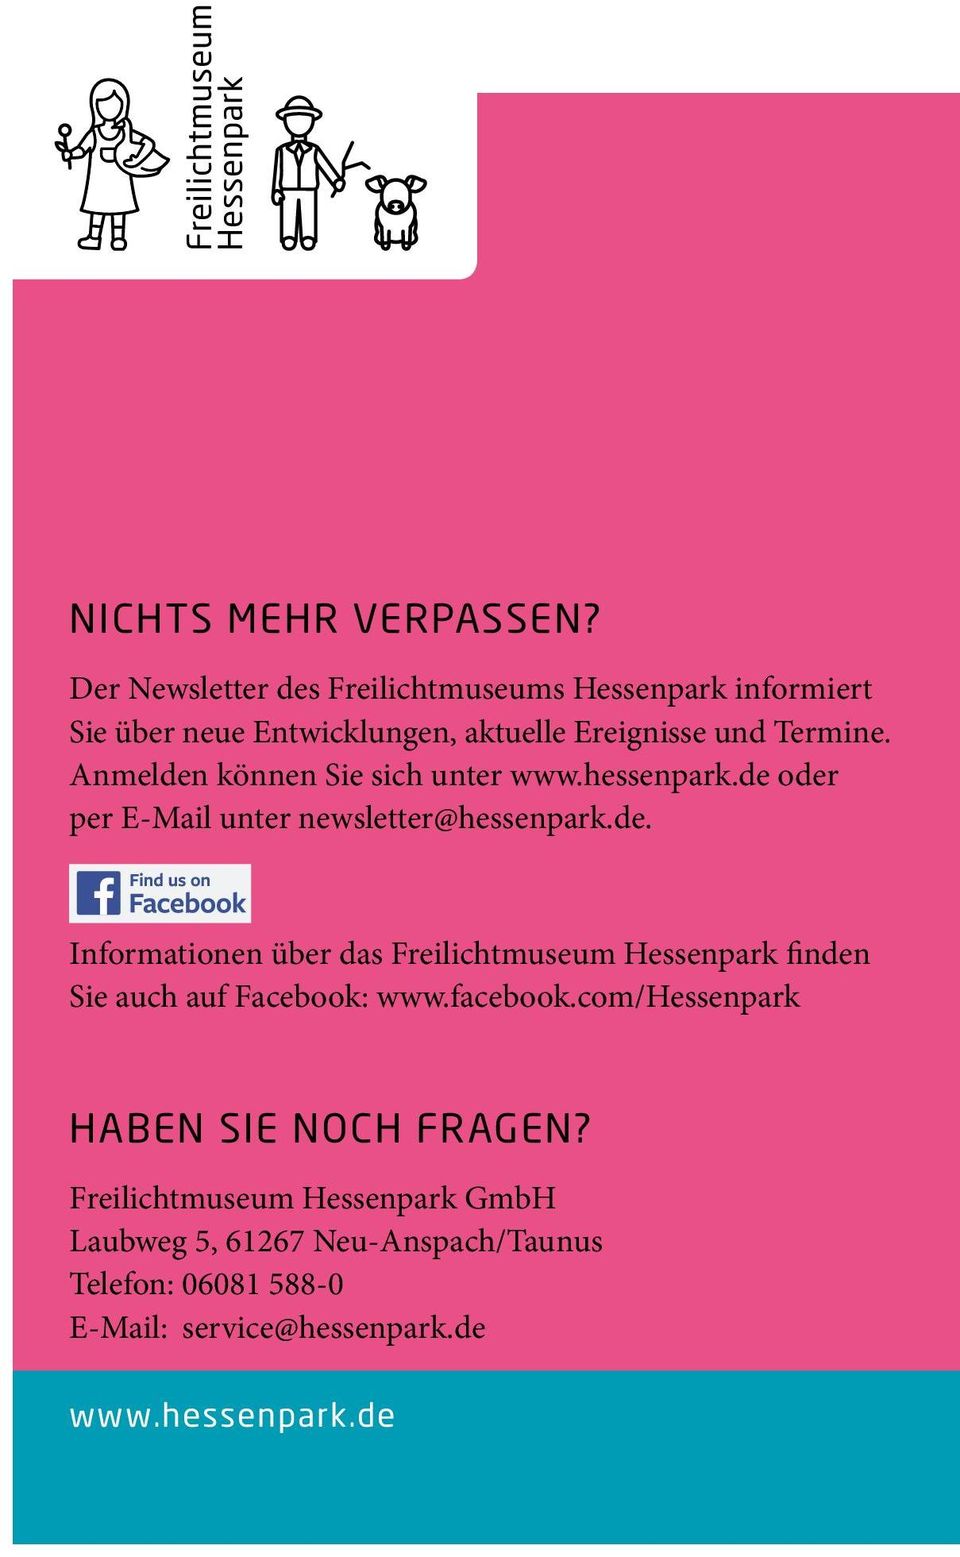 Anmelden können Sie sich unter www.hessenpark.de oder per E-Mail unter newsletter@hessenpark.de. Informationen über das Freilichtmuseum Hessenpark finden Sie auch auf Facebook: www.